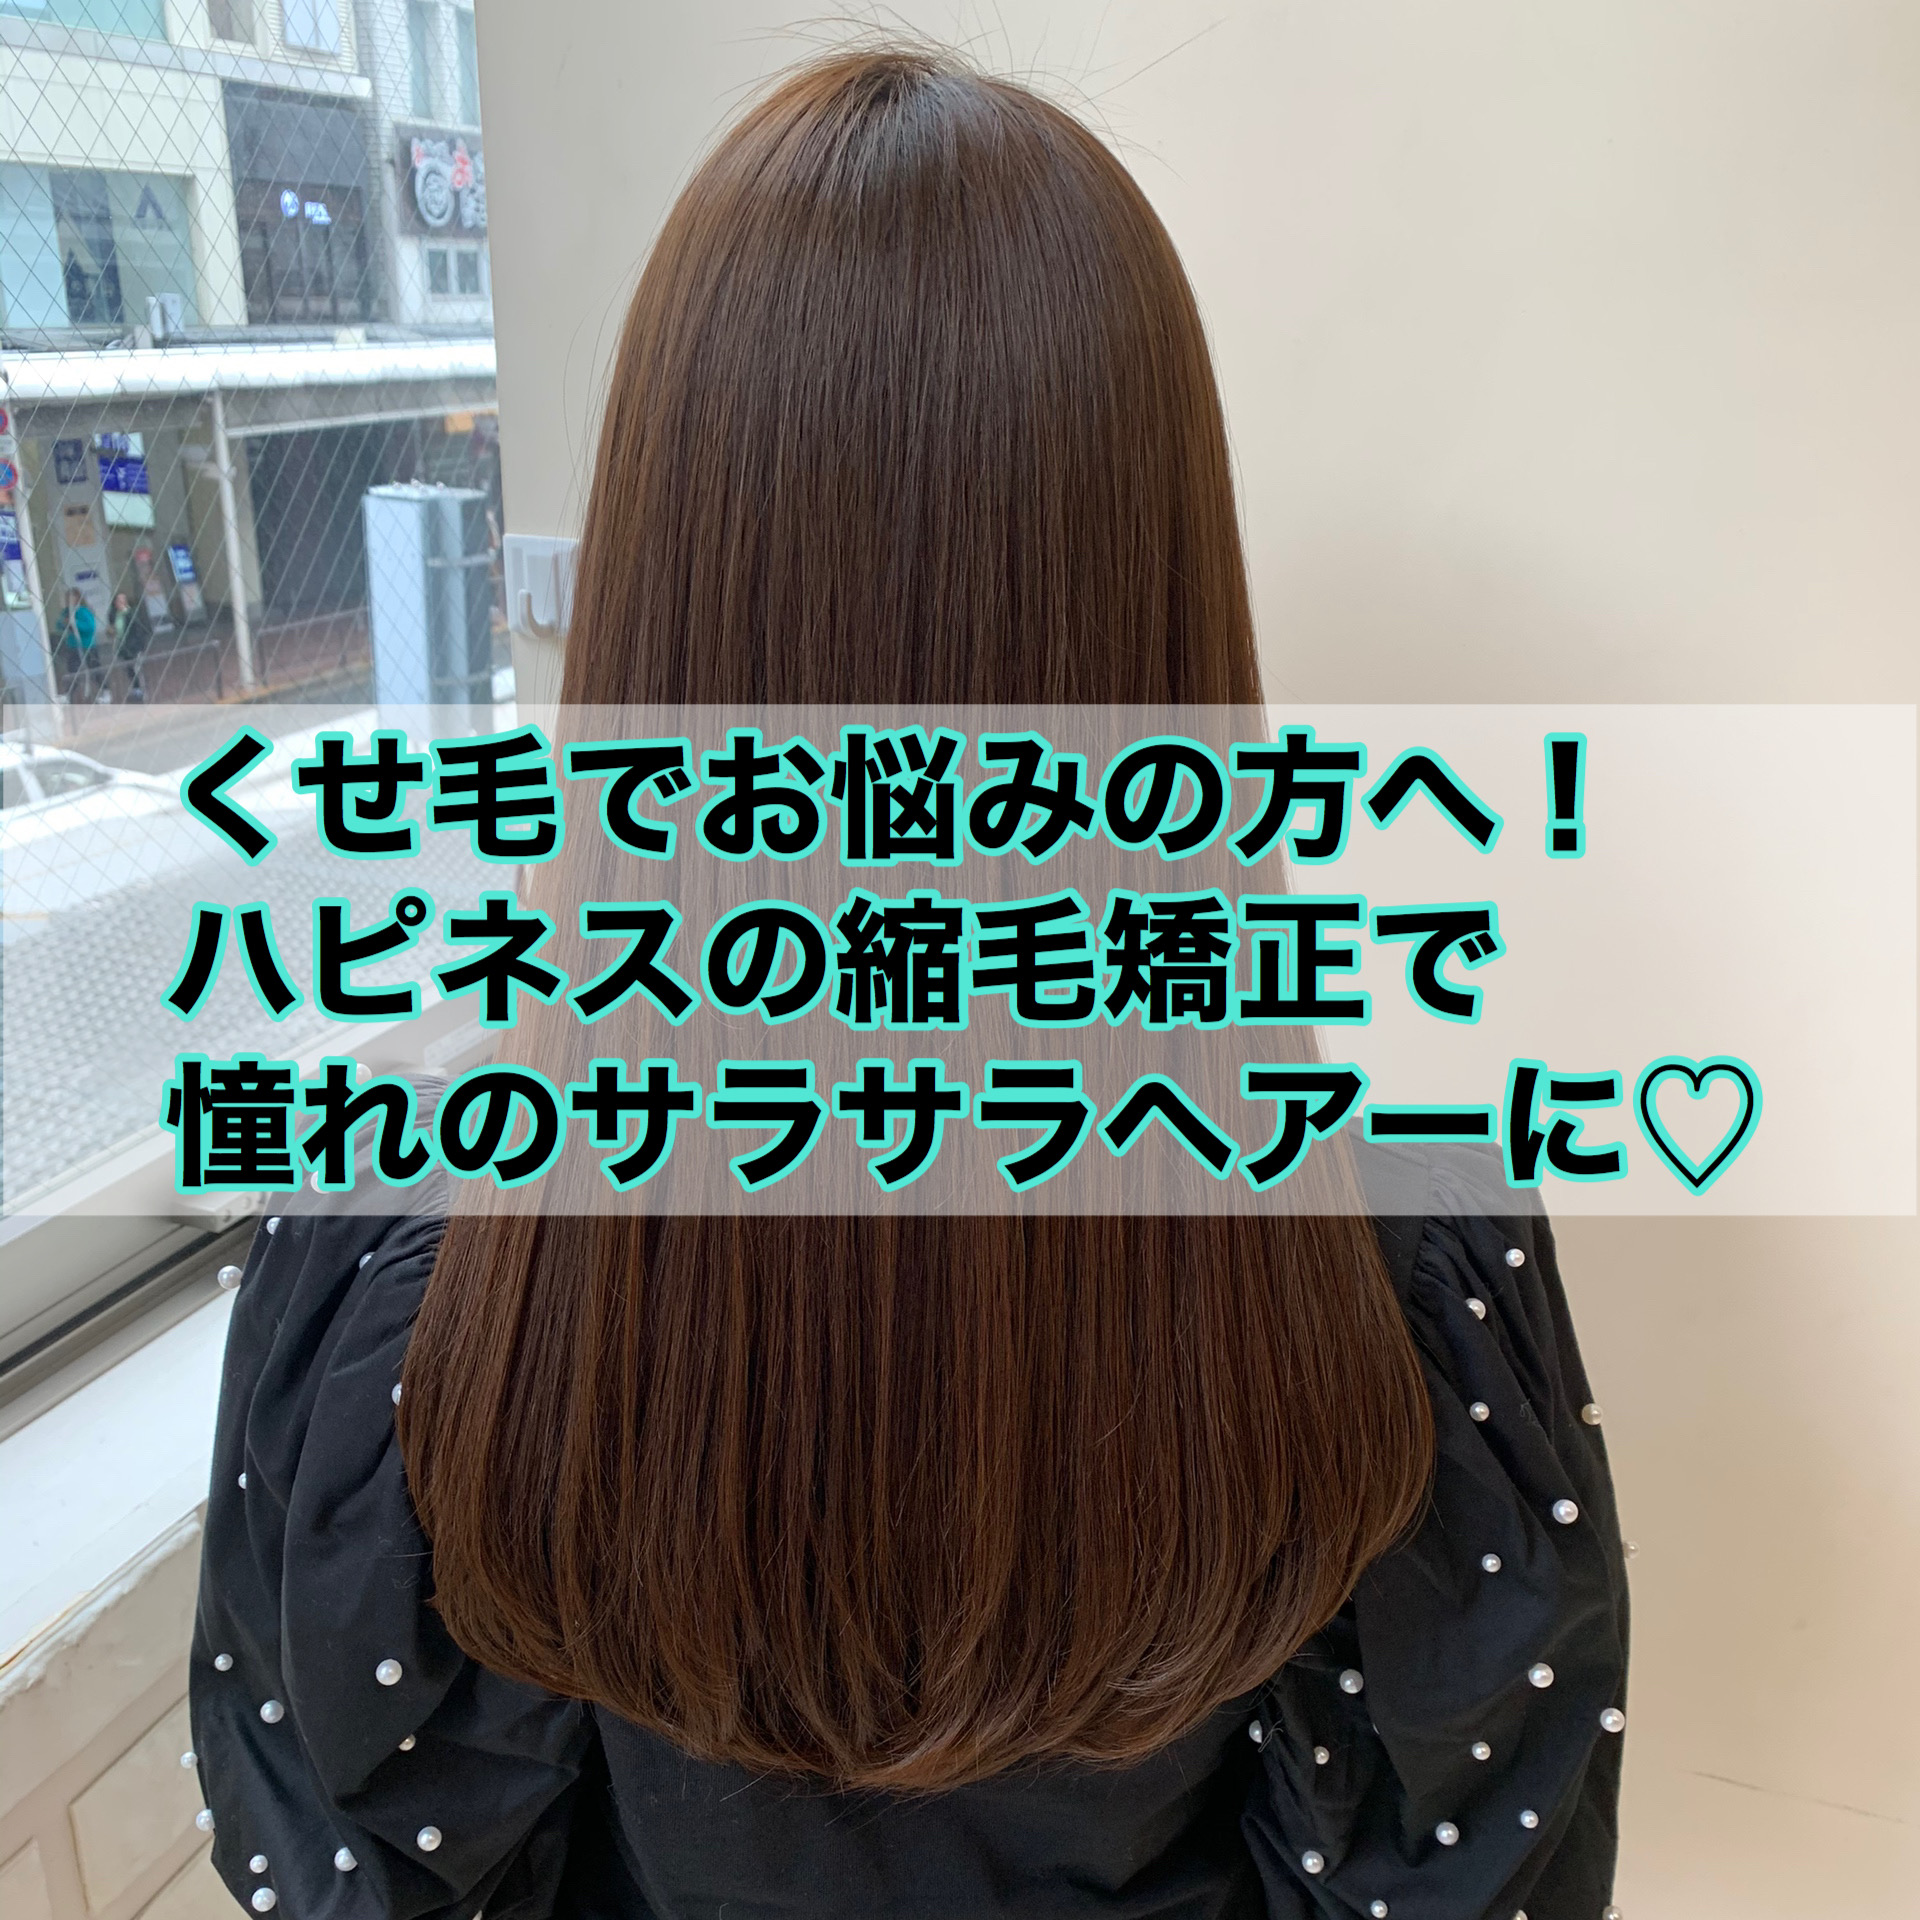 くせ毛でお悩みの方へ ハピネスの縮毛矯正で憧れのさらさらヘアに 奈良 京都 大阪の美容室 ハピネス